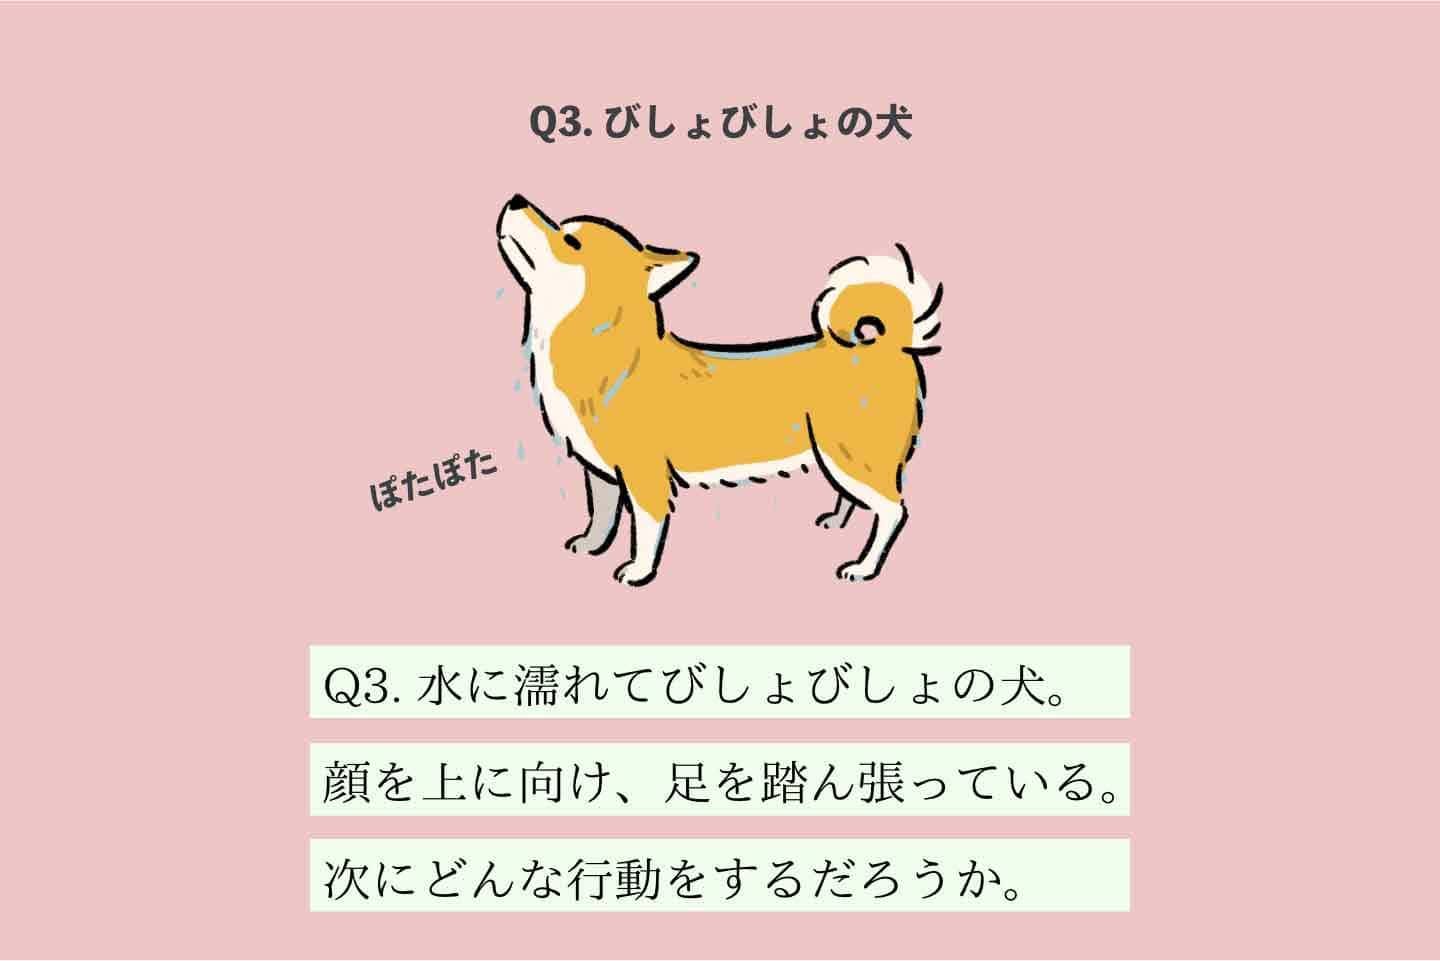 サキヲヨムヌシの生態《変な飼いヌシ図鑑035》